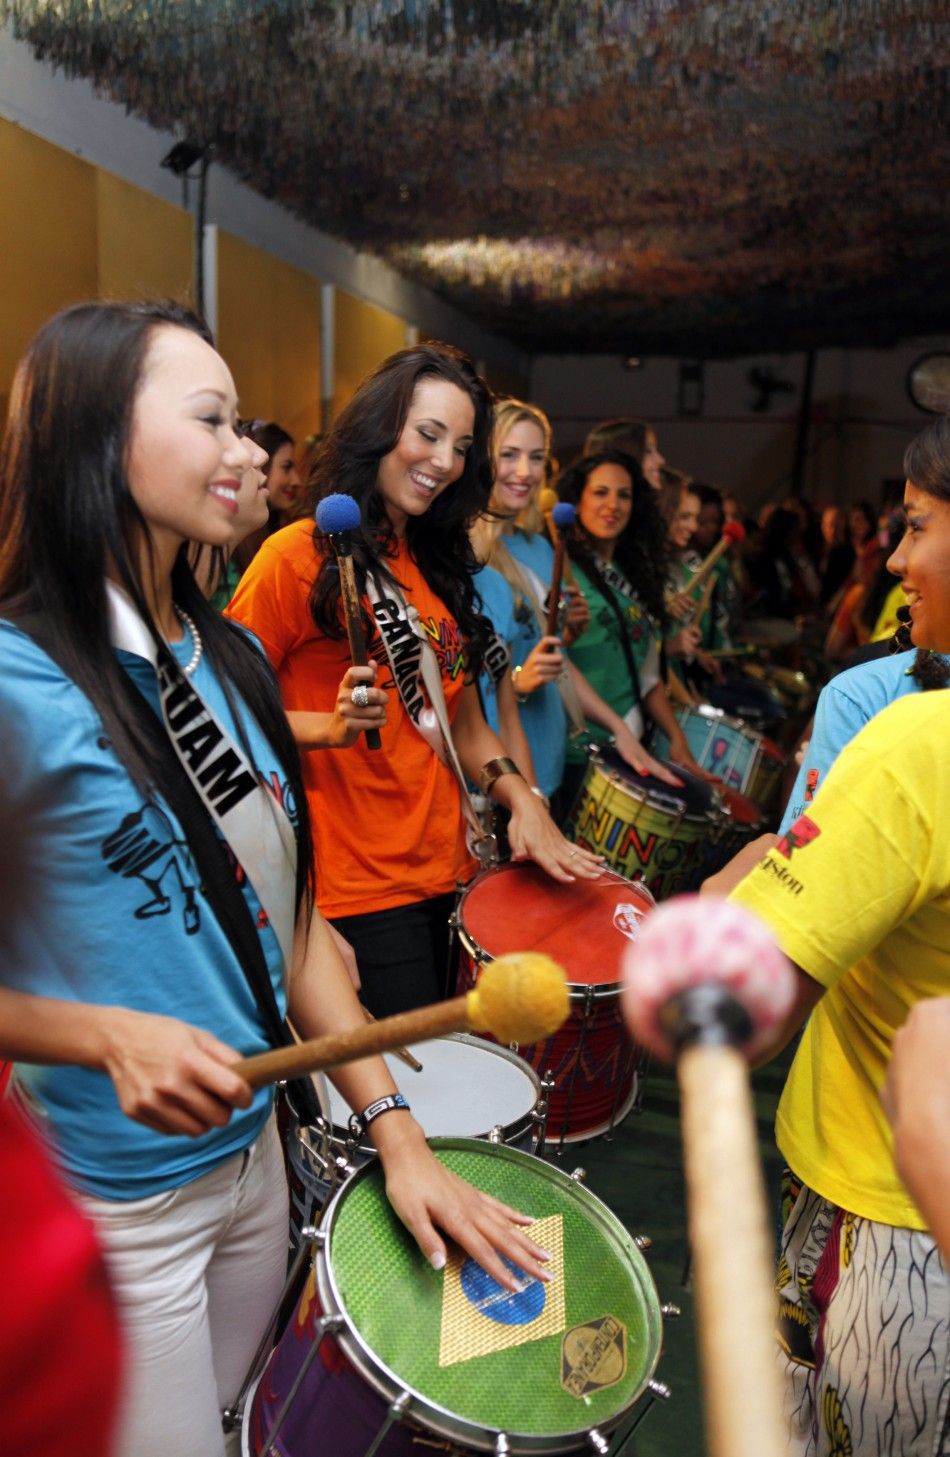 Miss Universe 2011 Stunning Contestants Dance to Help Slum Children in Brazil.